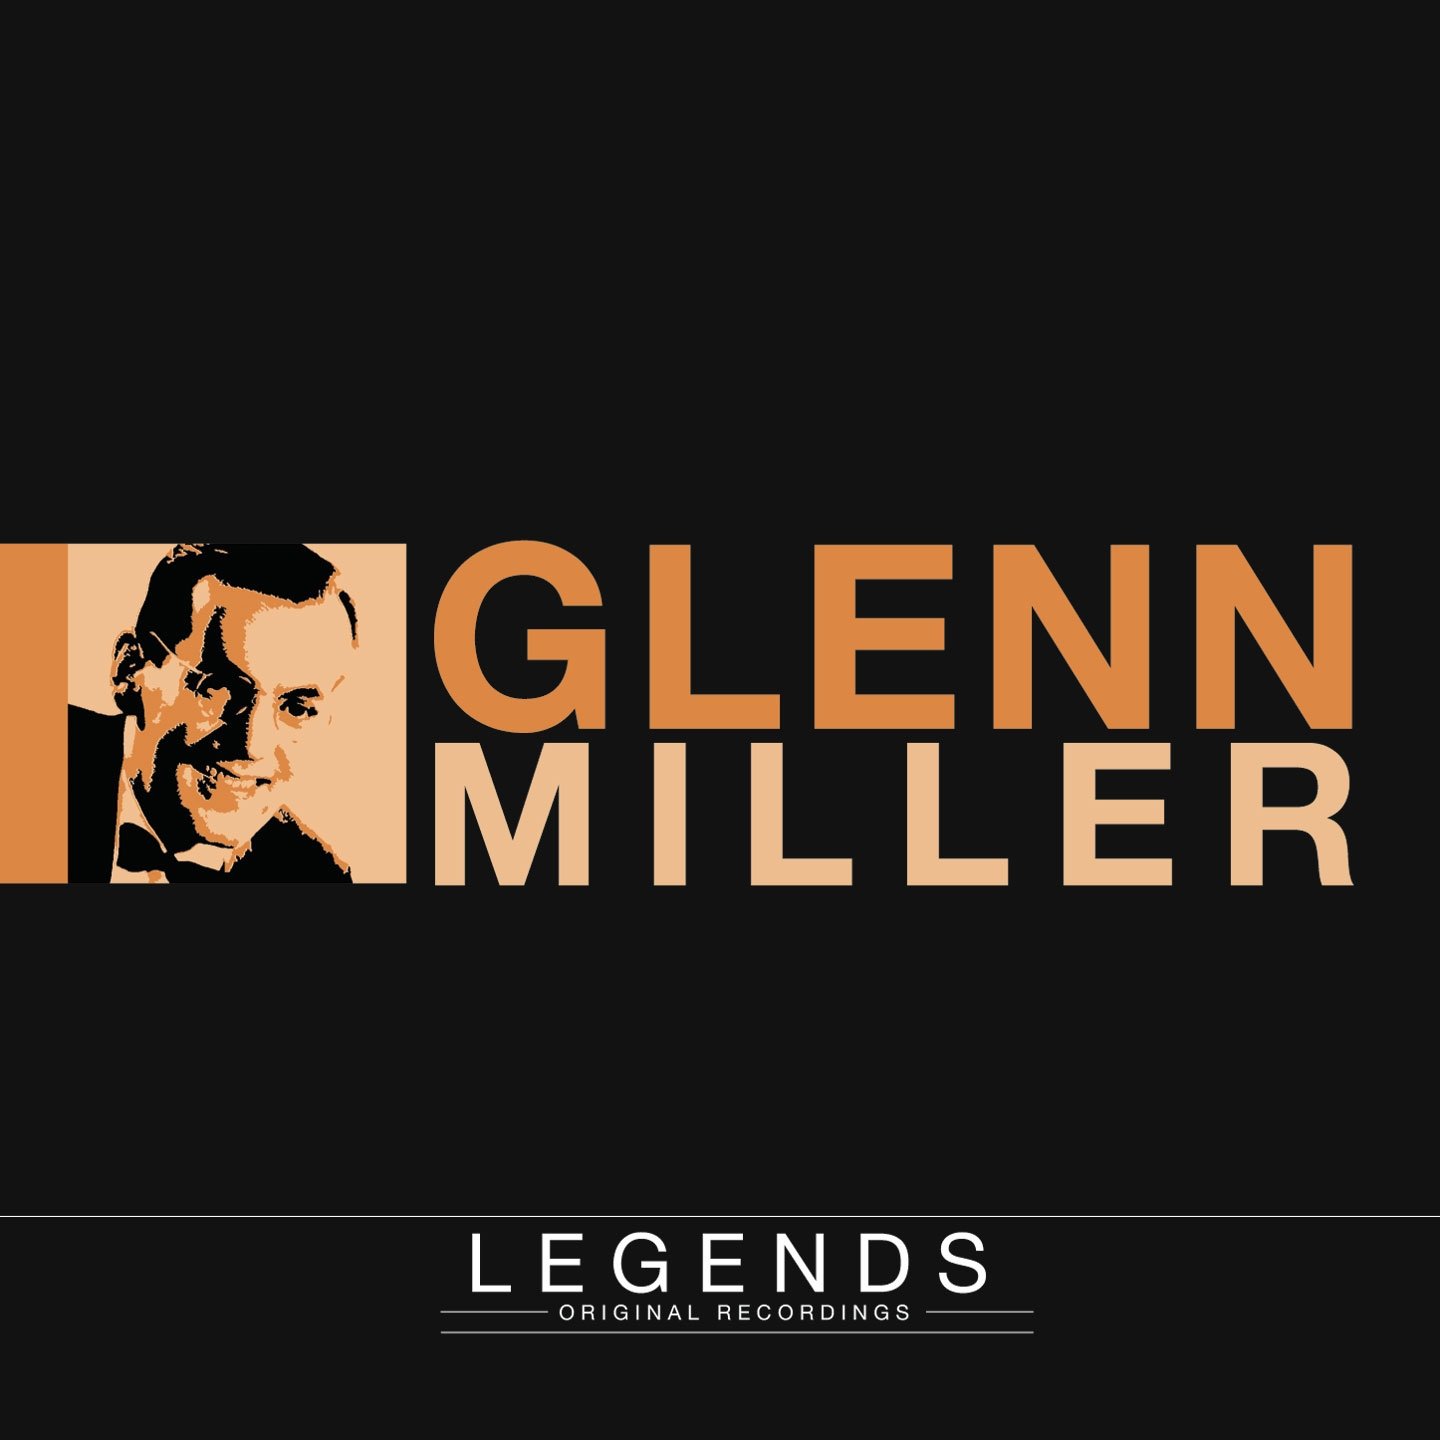 Glenn Miller: King Of Sound